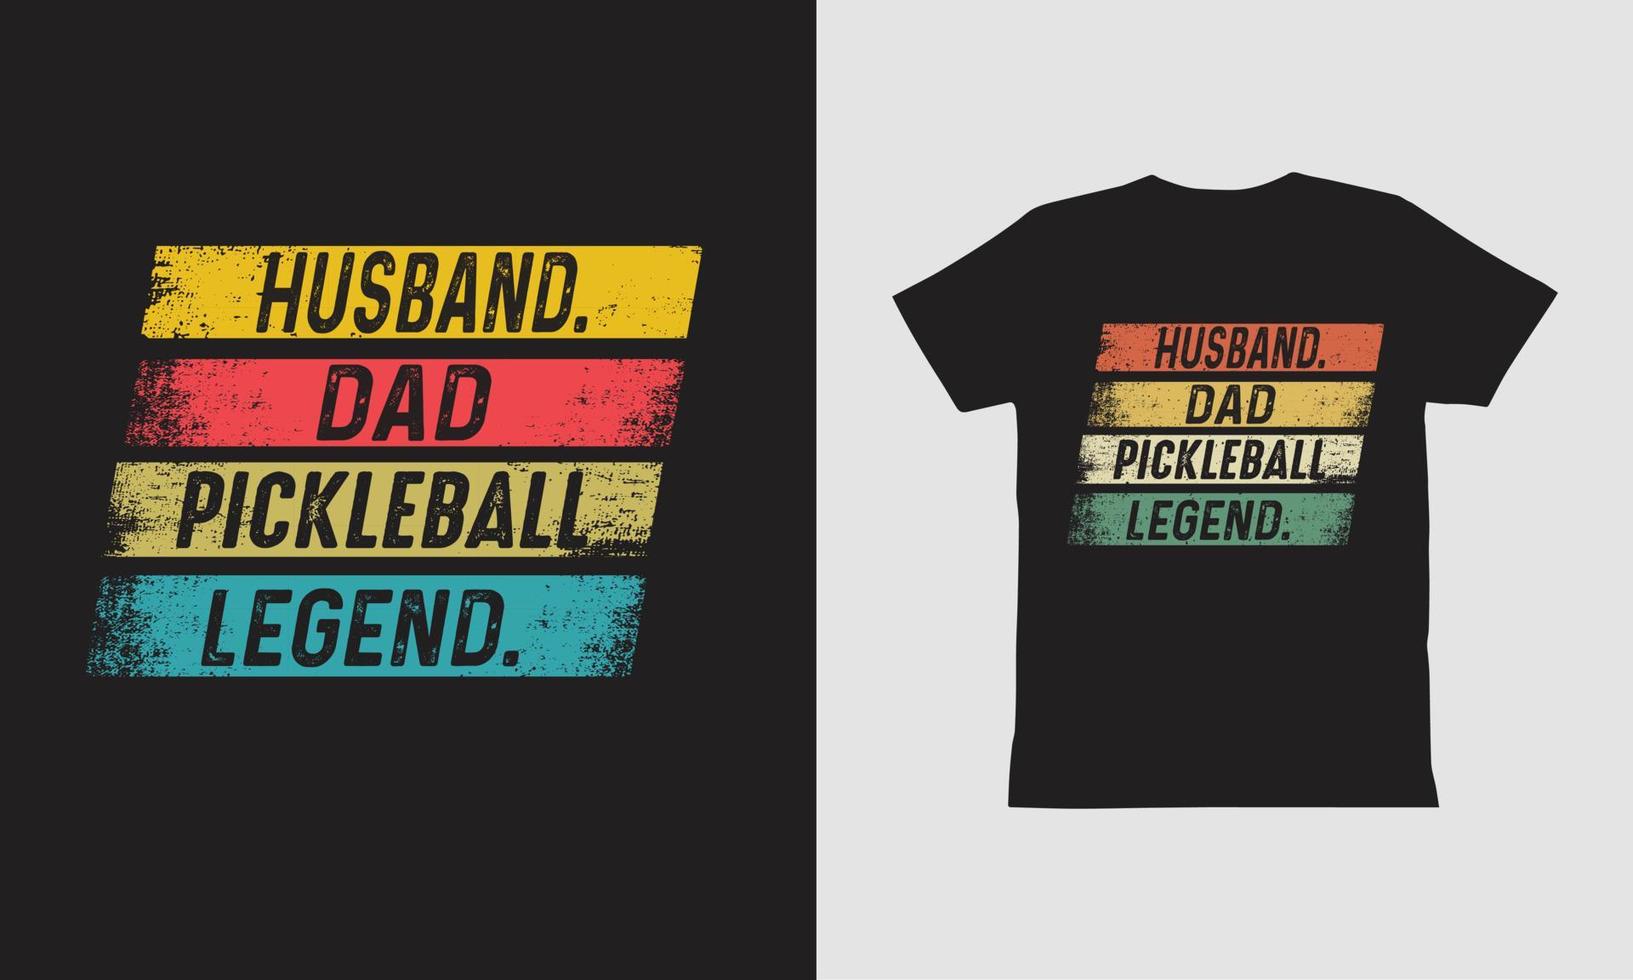 diseño de camiseta de la leyenda de pickle-ball de papá esposo. vector